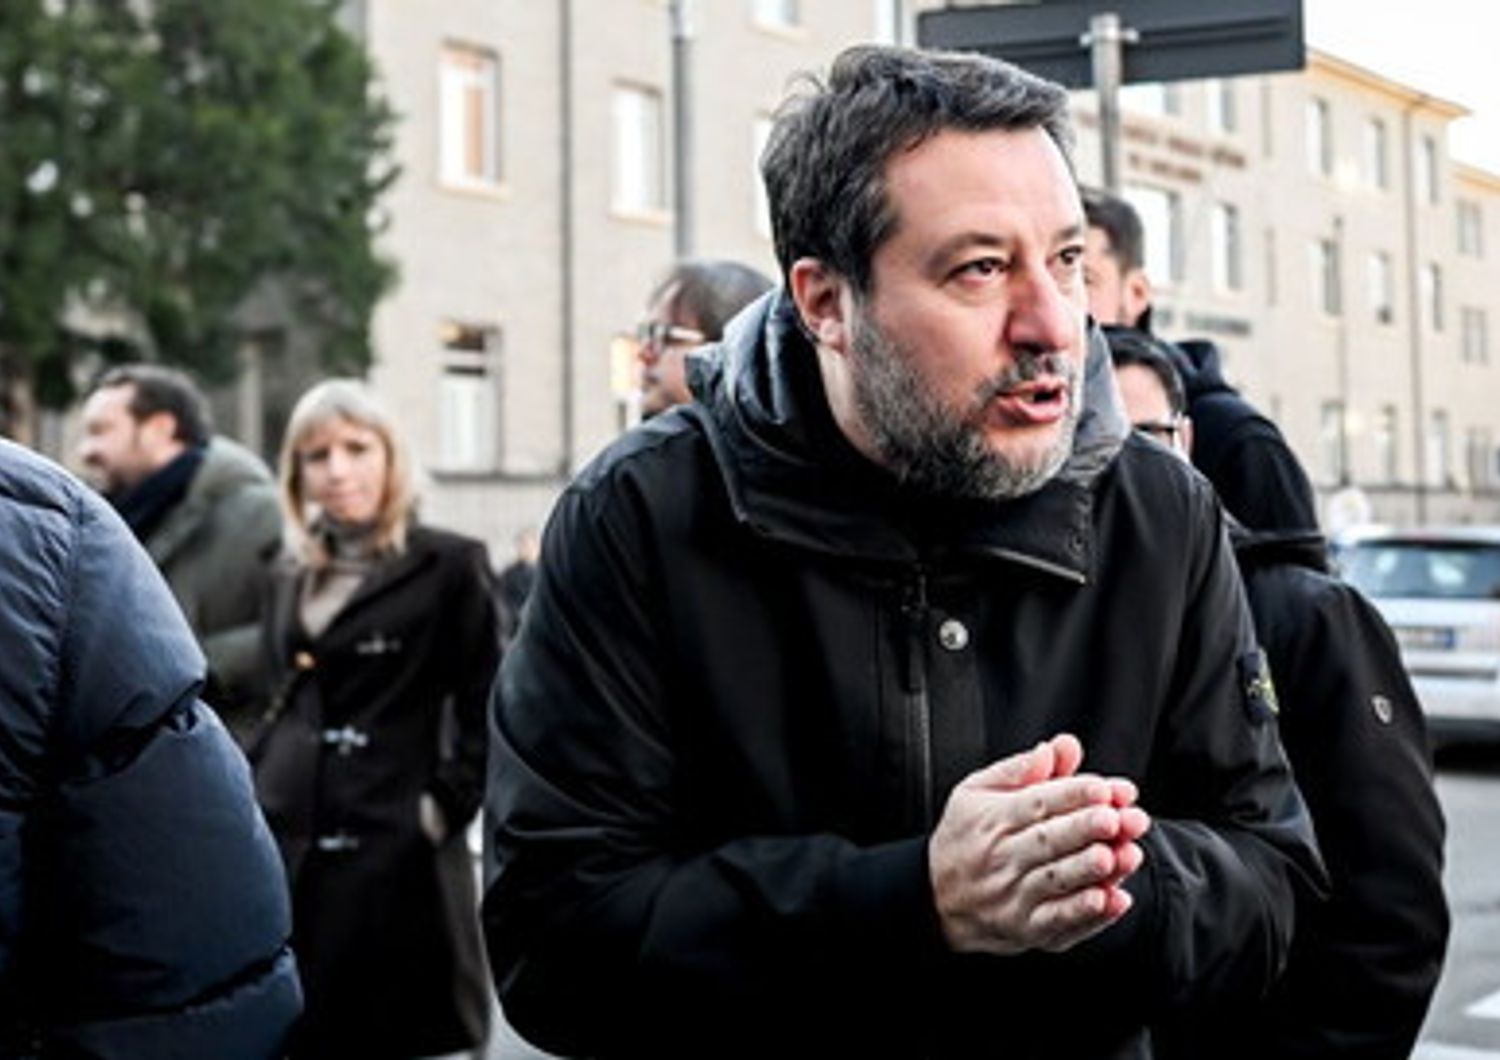 Boicottaggio della pasta Rummo dopo la visita di Salvini. È polemica